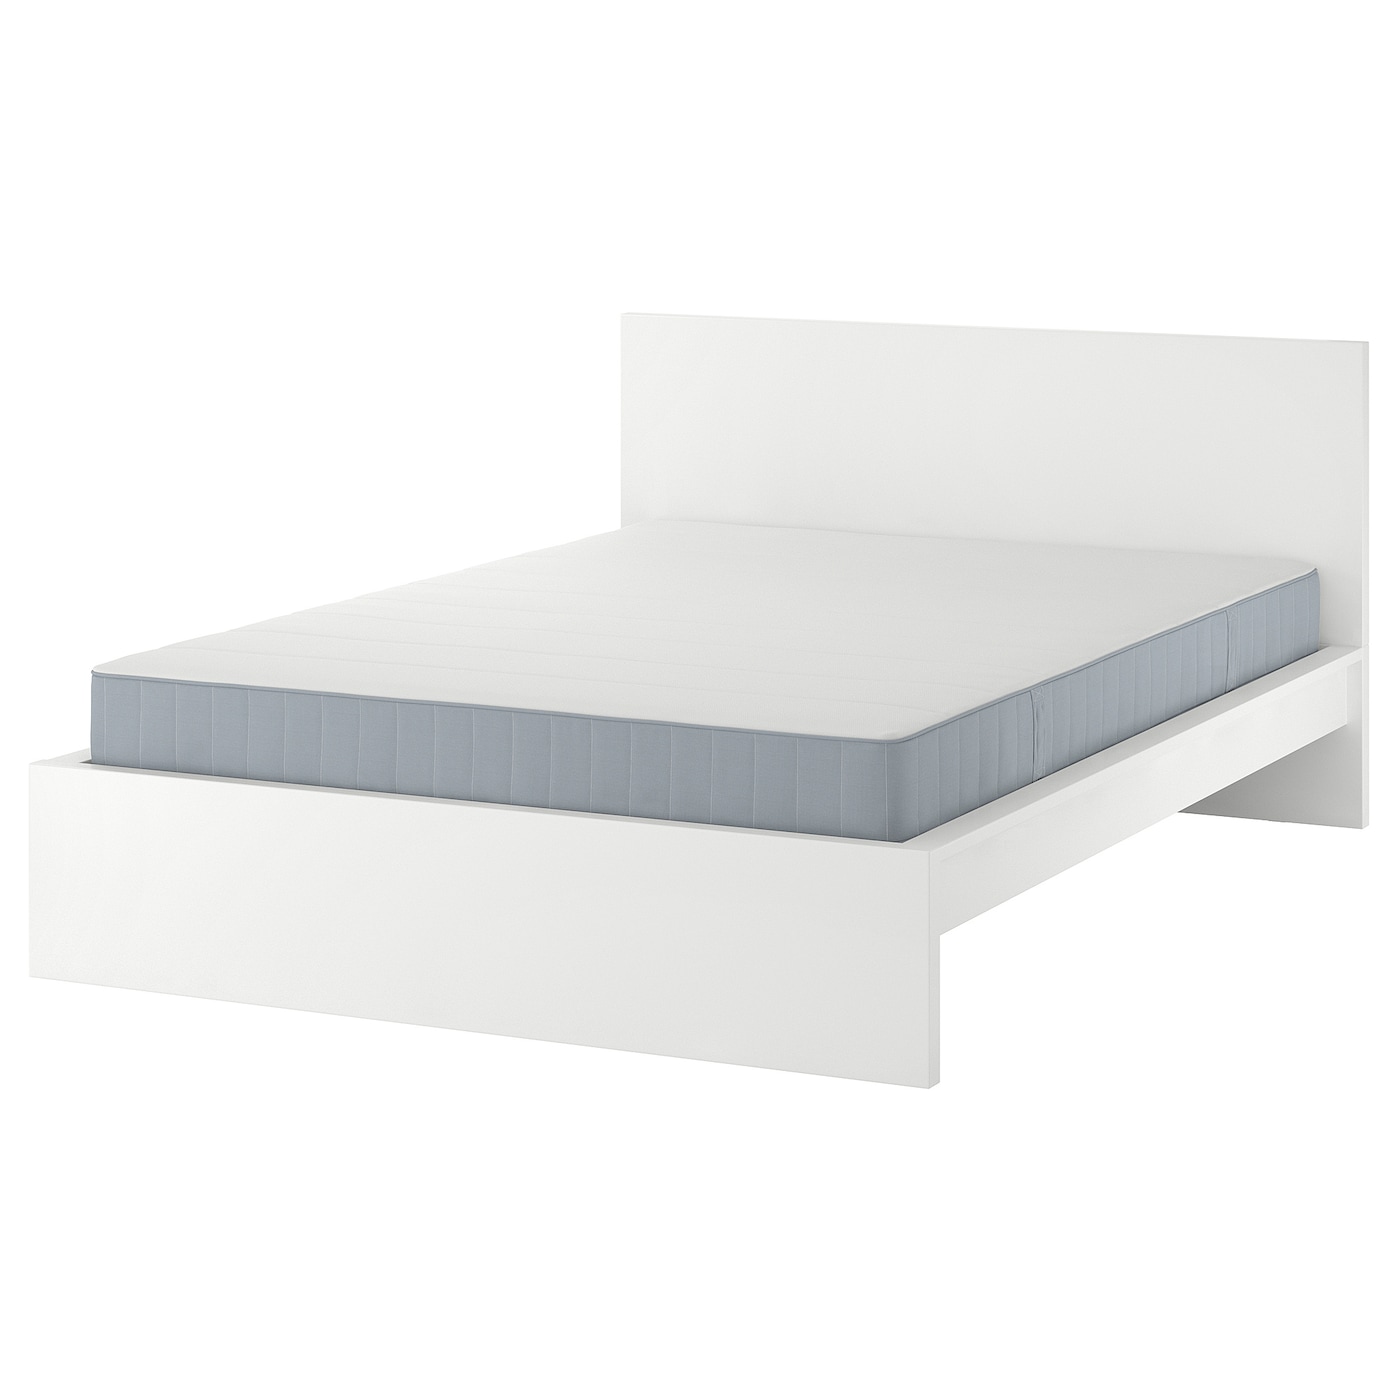 Кровать - IKEA MALM, 200х160 см, матрас средне-жесткий, белый, МАЛЬМ ИКЕА